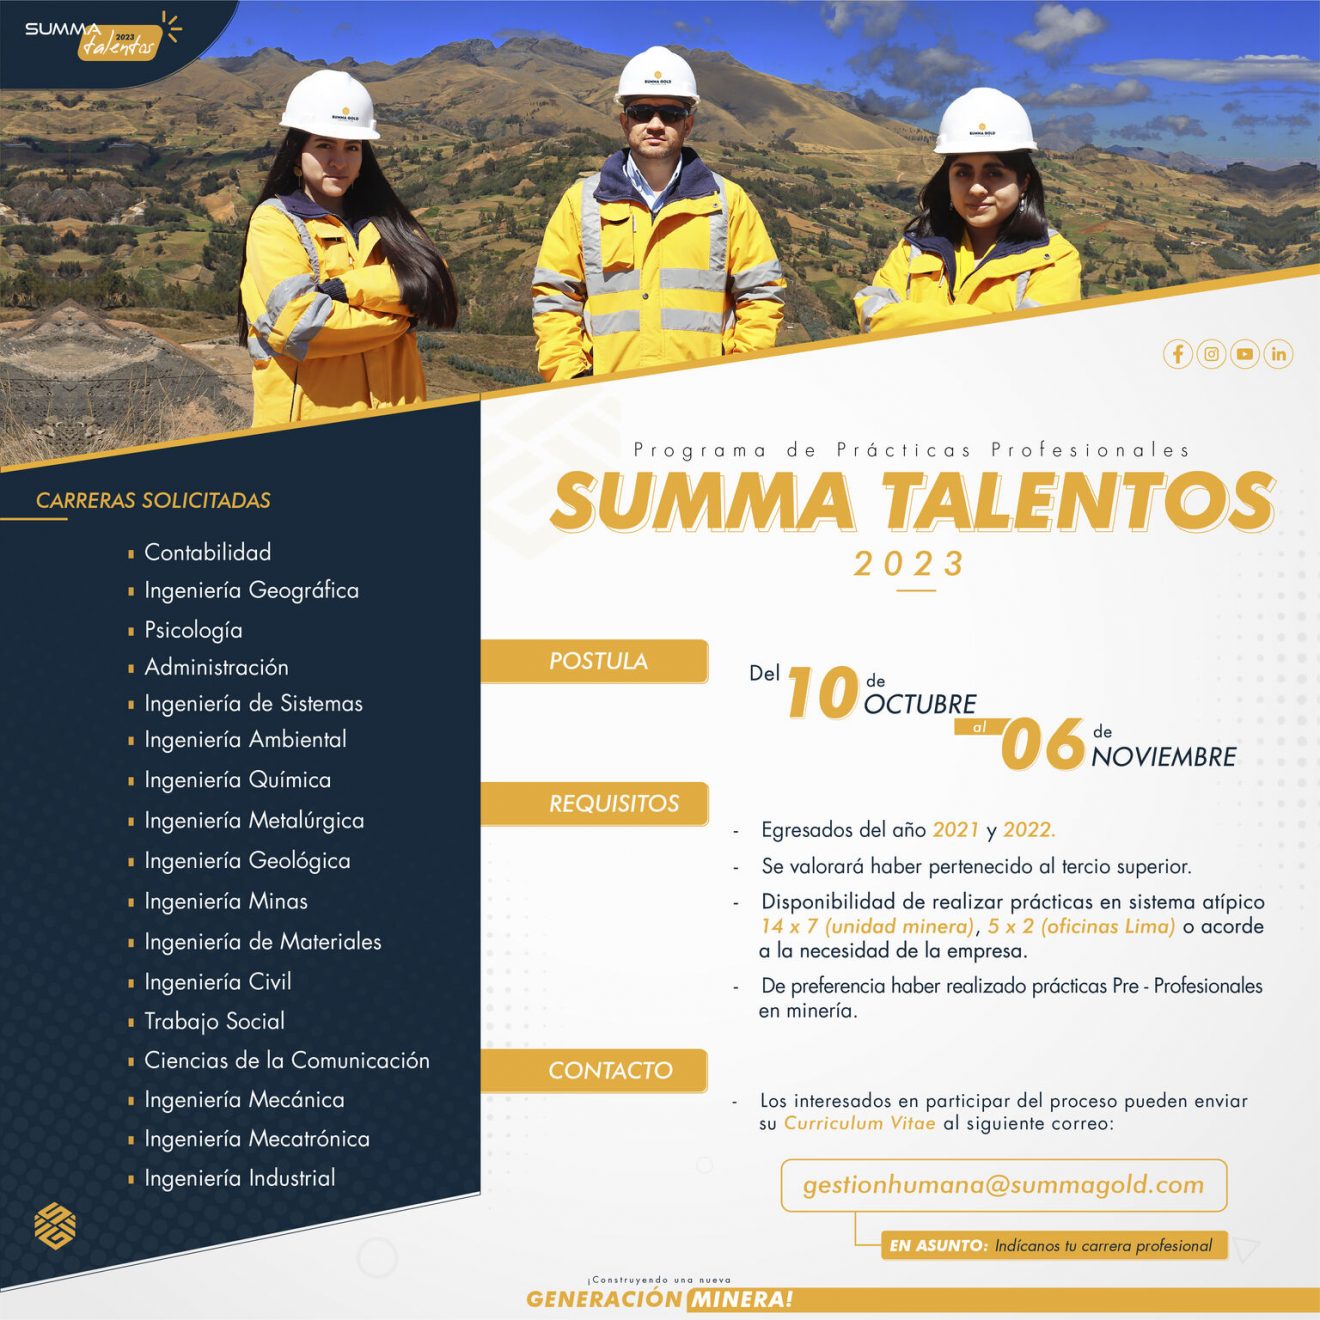 (Summa Gold) Programa de Prácticas Profesionales “Summa Talentos 2023”